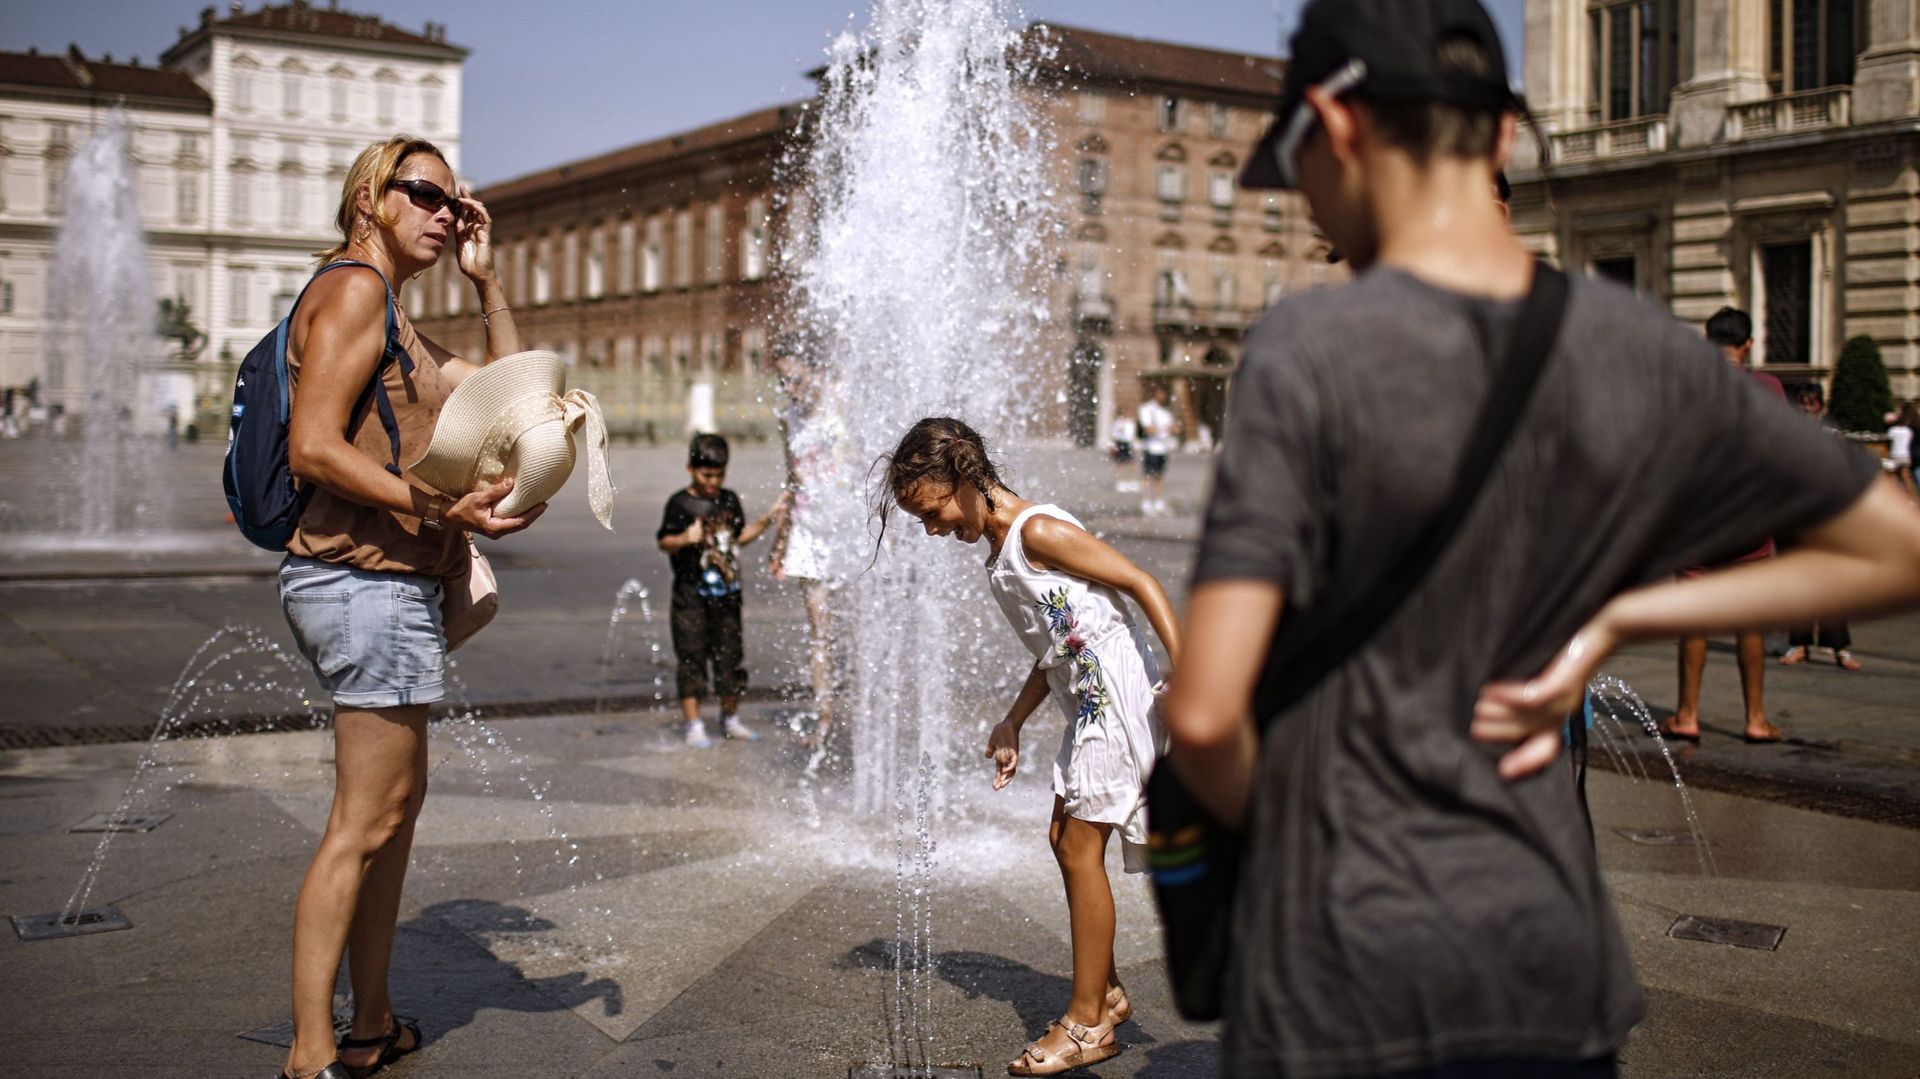 Fortes chaleurs en Italie: contrairement à la fontaine de Trevi à Rome, celle-ci sur la Piazza Castello à Turin permet de se rafraichir